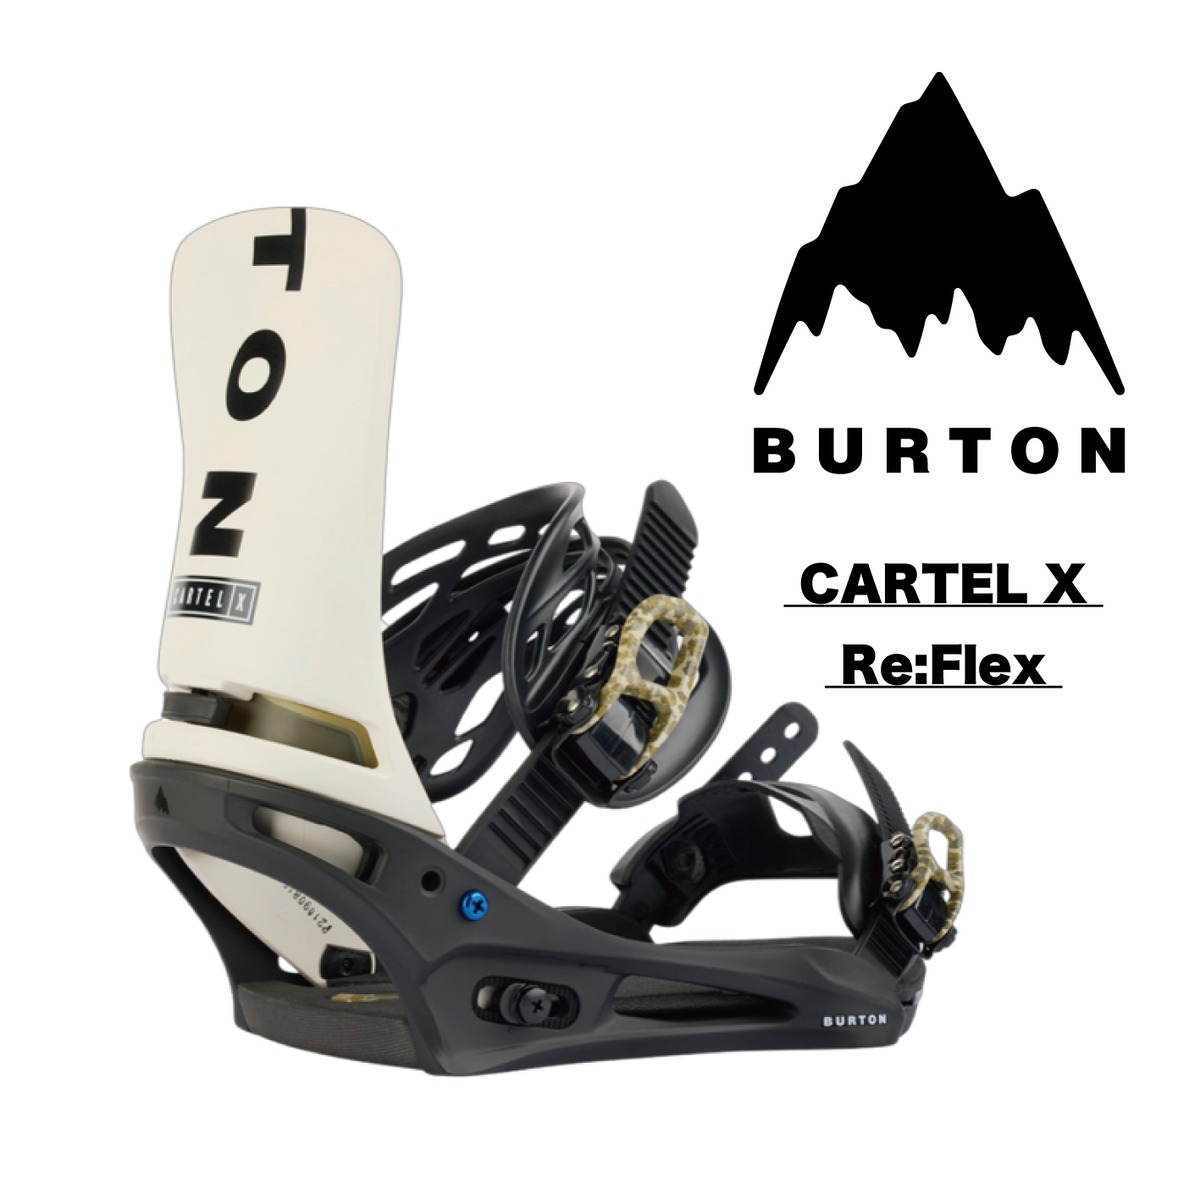 22-23 BURTON『 CARTEL X Re:Flex 』スノーボード バインディング ビンディング binding バートン カーテルエックス  リフレックス カービング テクニカル スノーボードテクニカル テク選 パウダー 地形遊び パーク メンズ レディース | snowboardshop  MDS